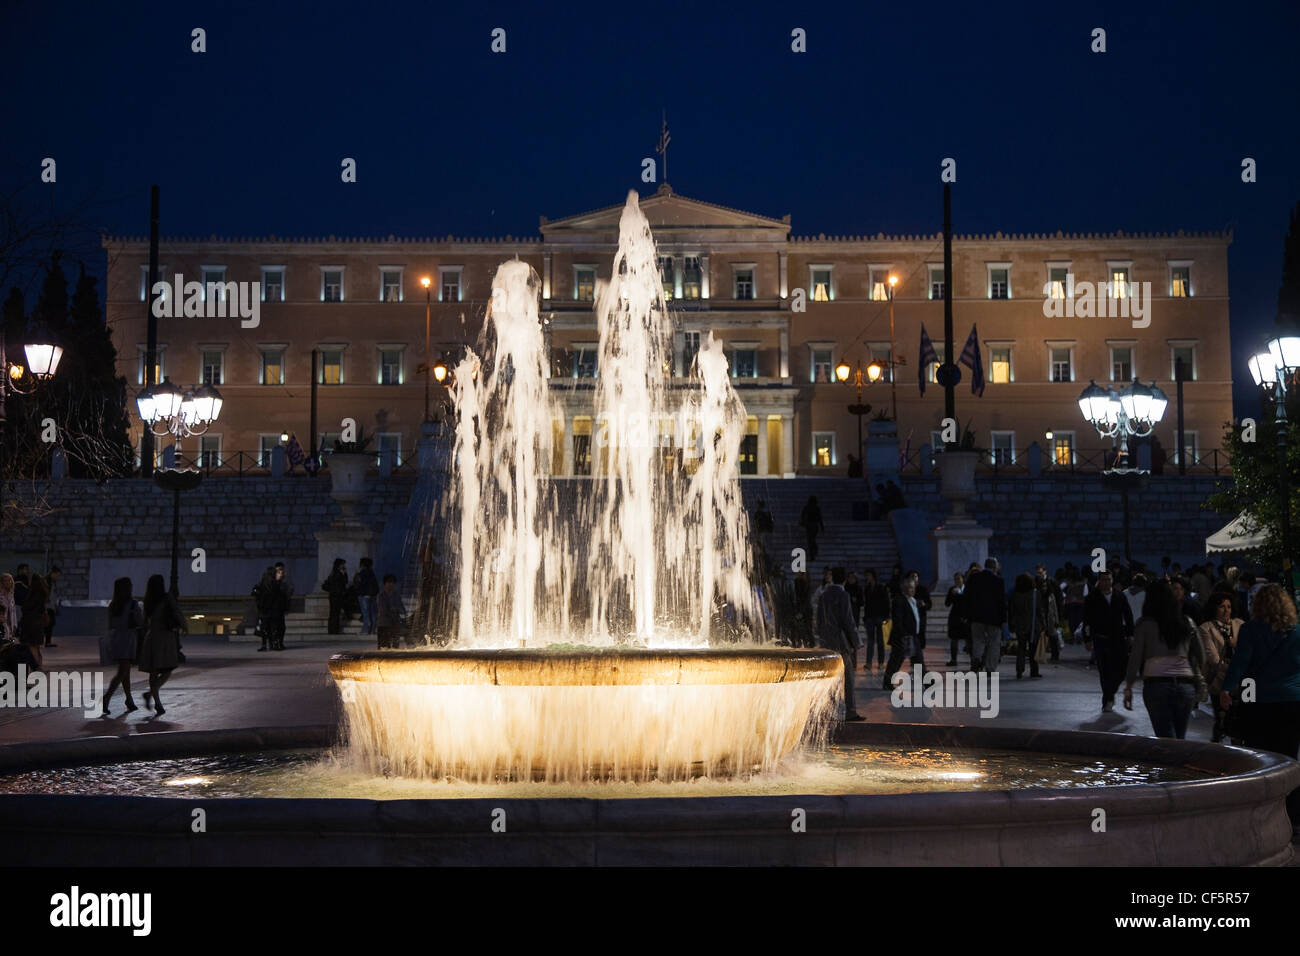 Fontaines de la Place Syntagma Square, Athènes, Grèce, avec l'édifice du parlement à l'arrière-plan, photo de nuit Banque D'Images